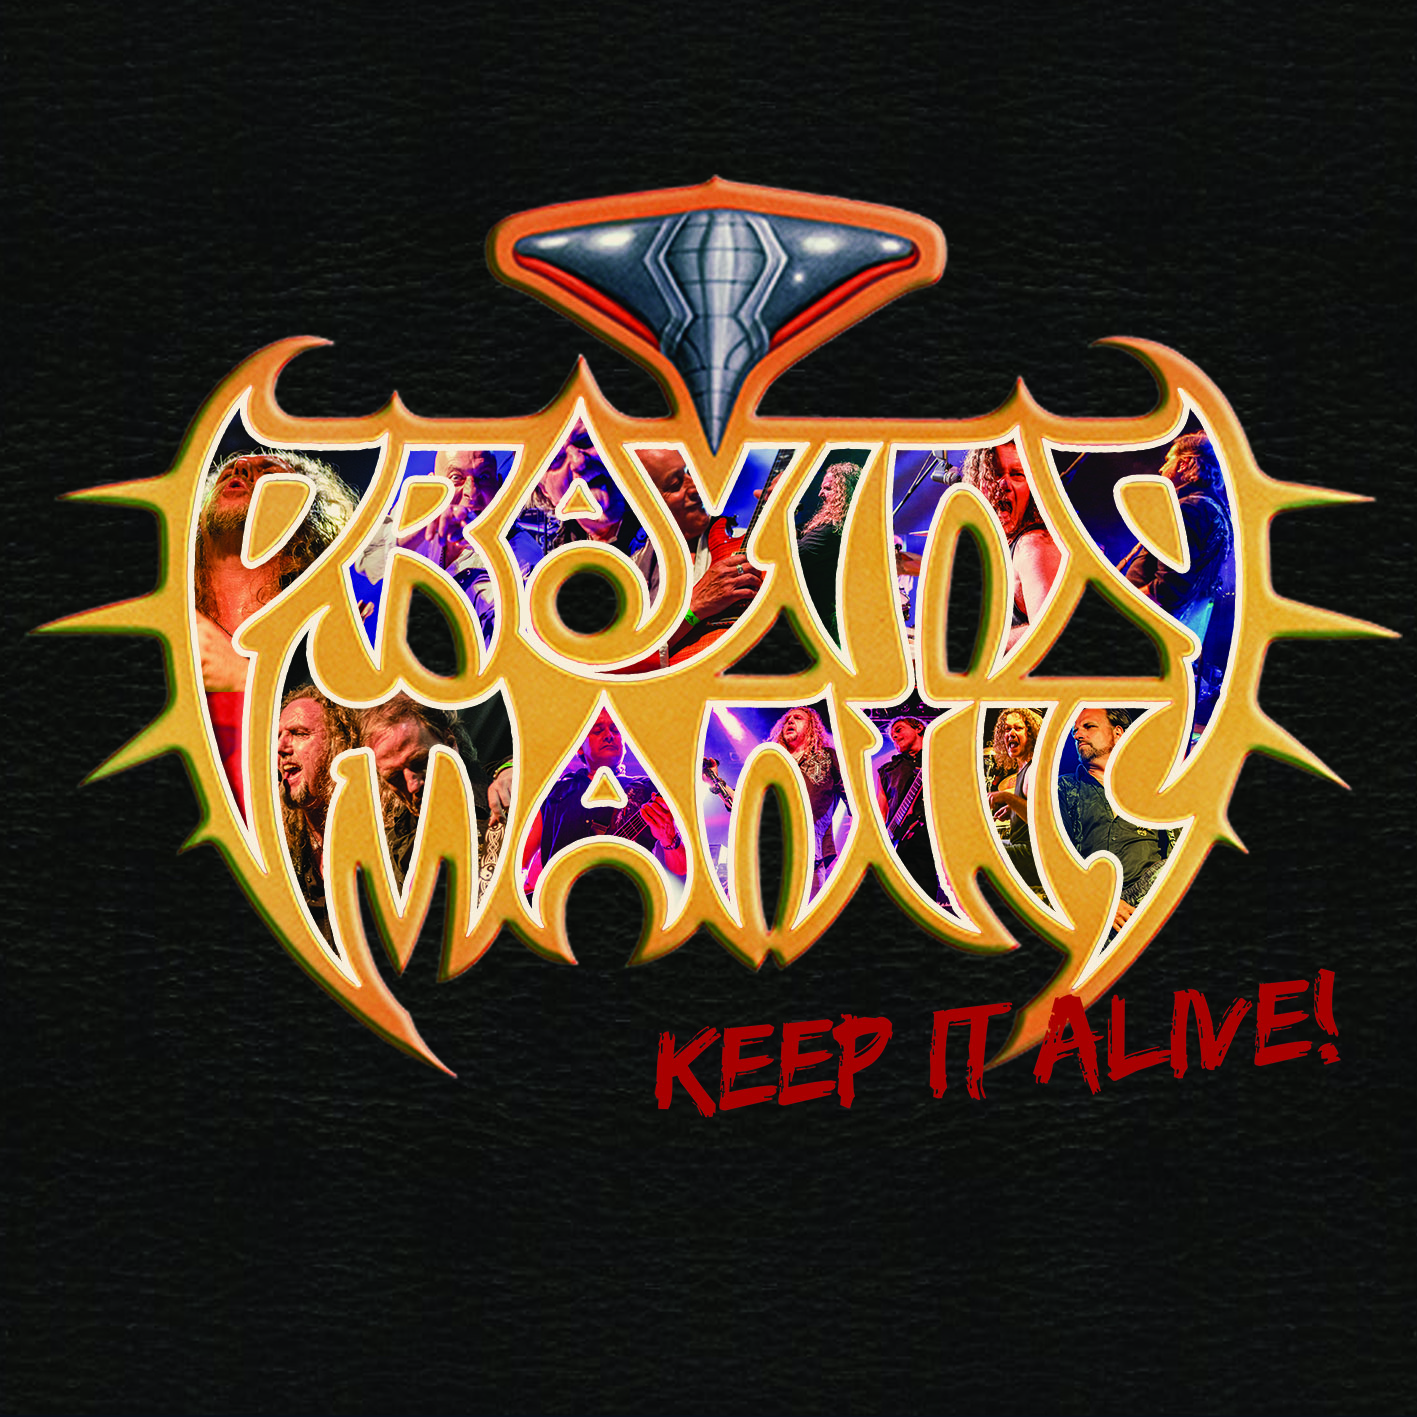 Praying Mantis (GB) – Keep It Alive!